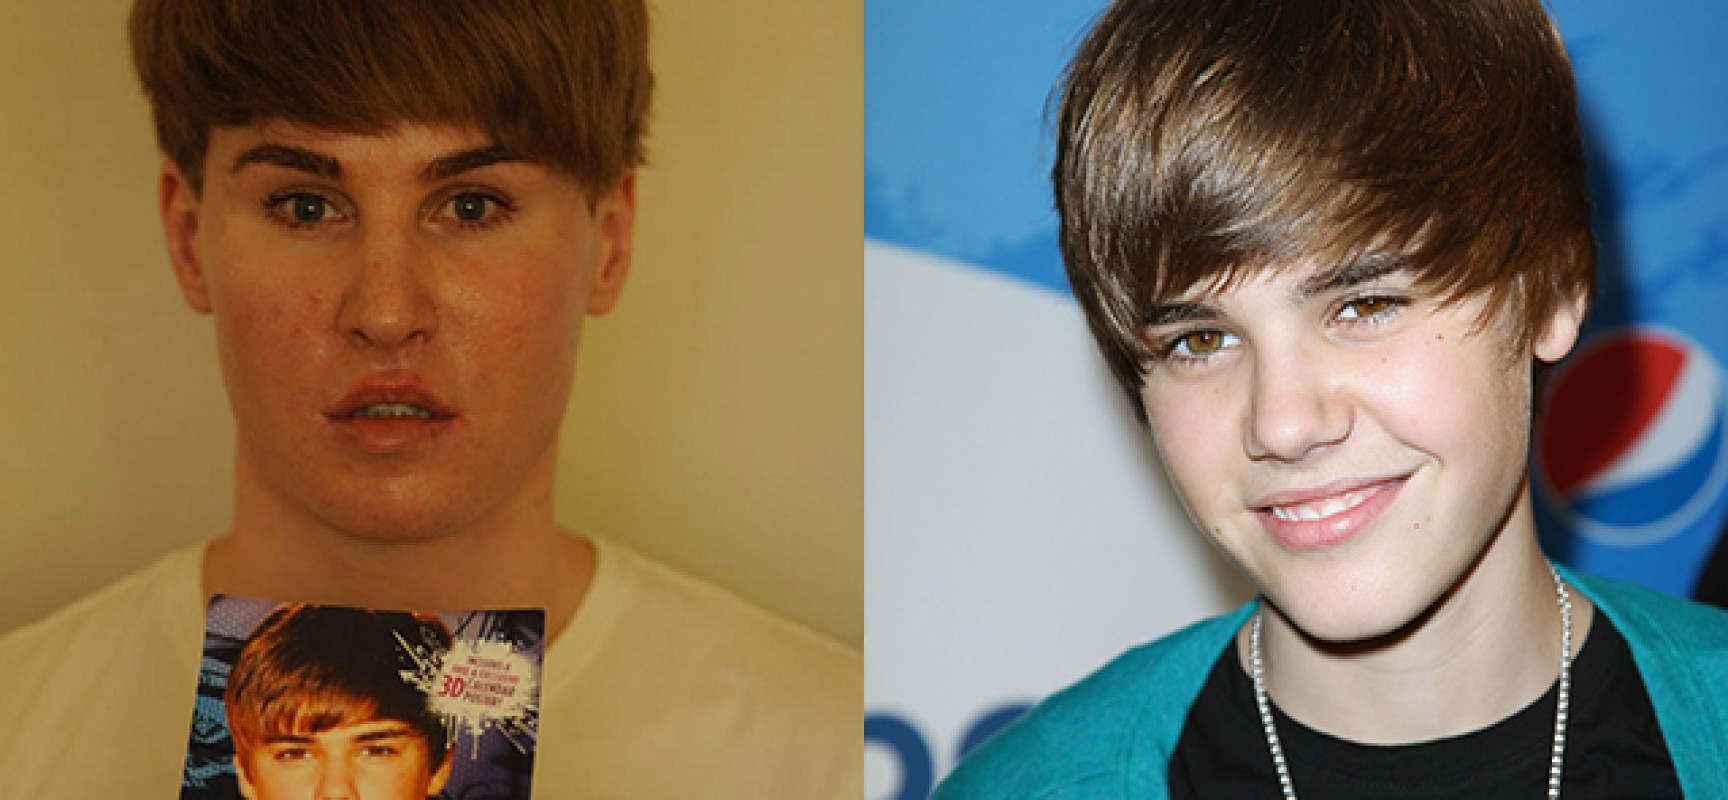 Toby-Sheldon-tente-de-ressembler-à-Justin-Bieber